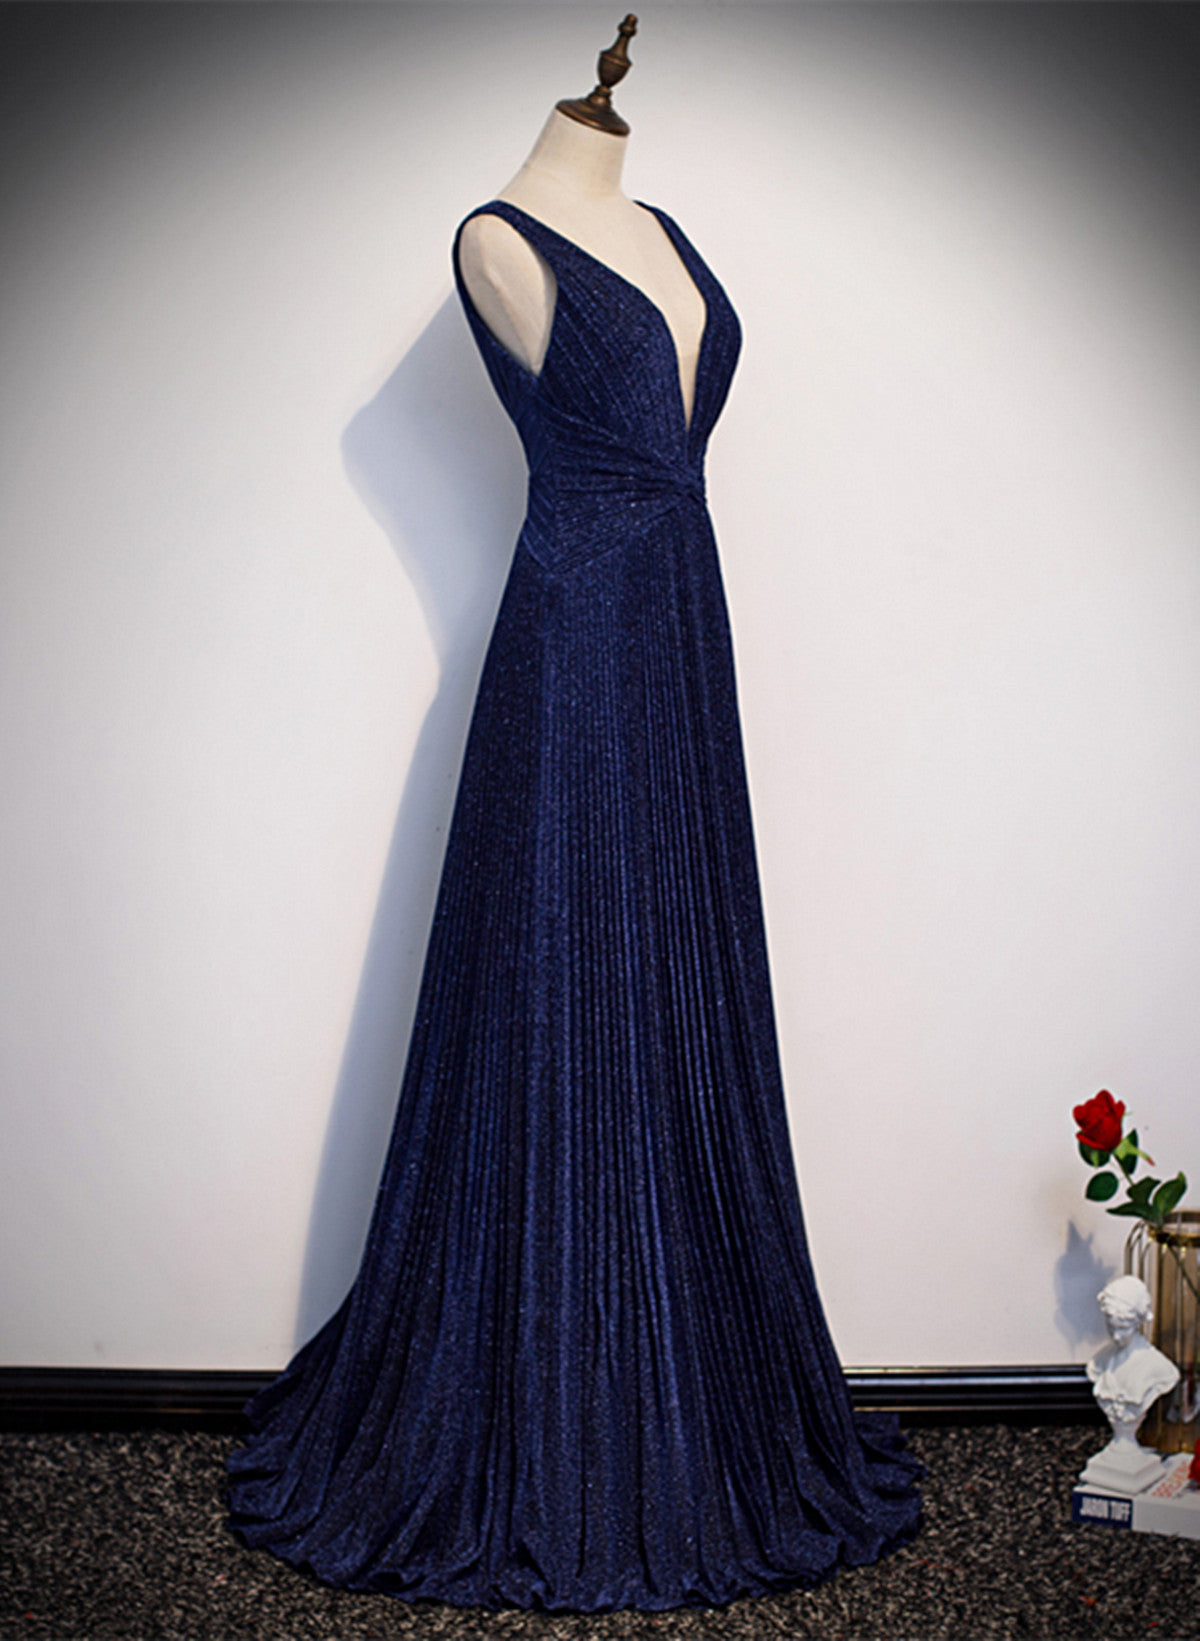 LOVECCRA-line Navy Blue V-neckline Long Party Dress, Navy Blue Long Prom Dress